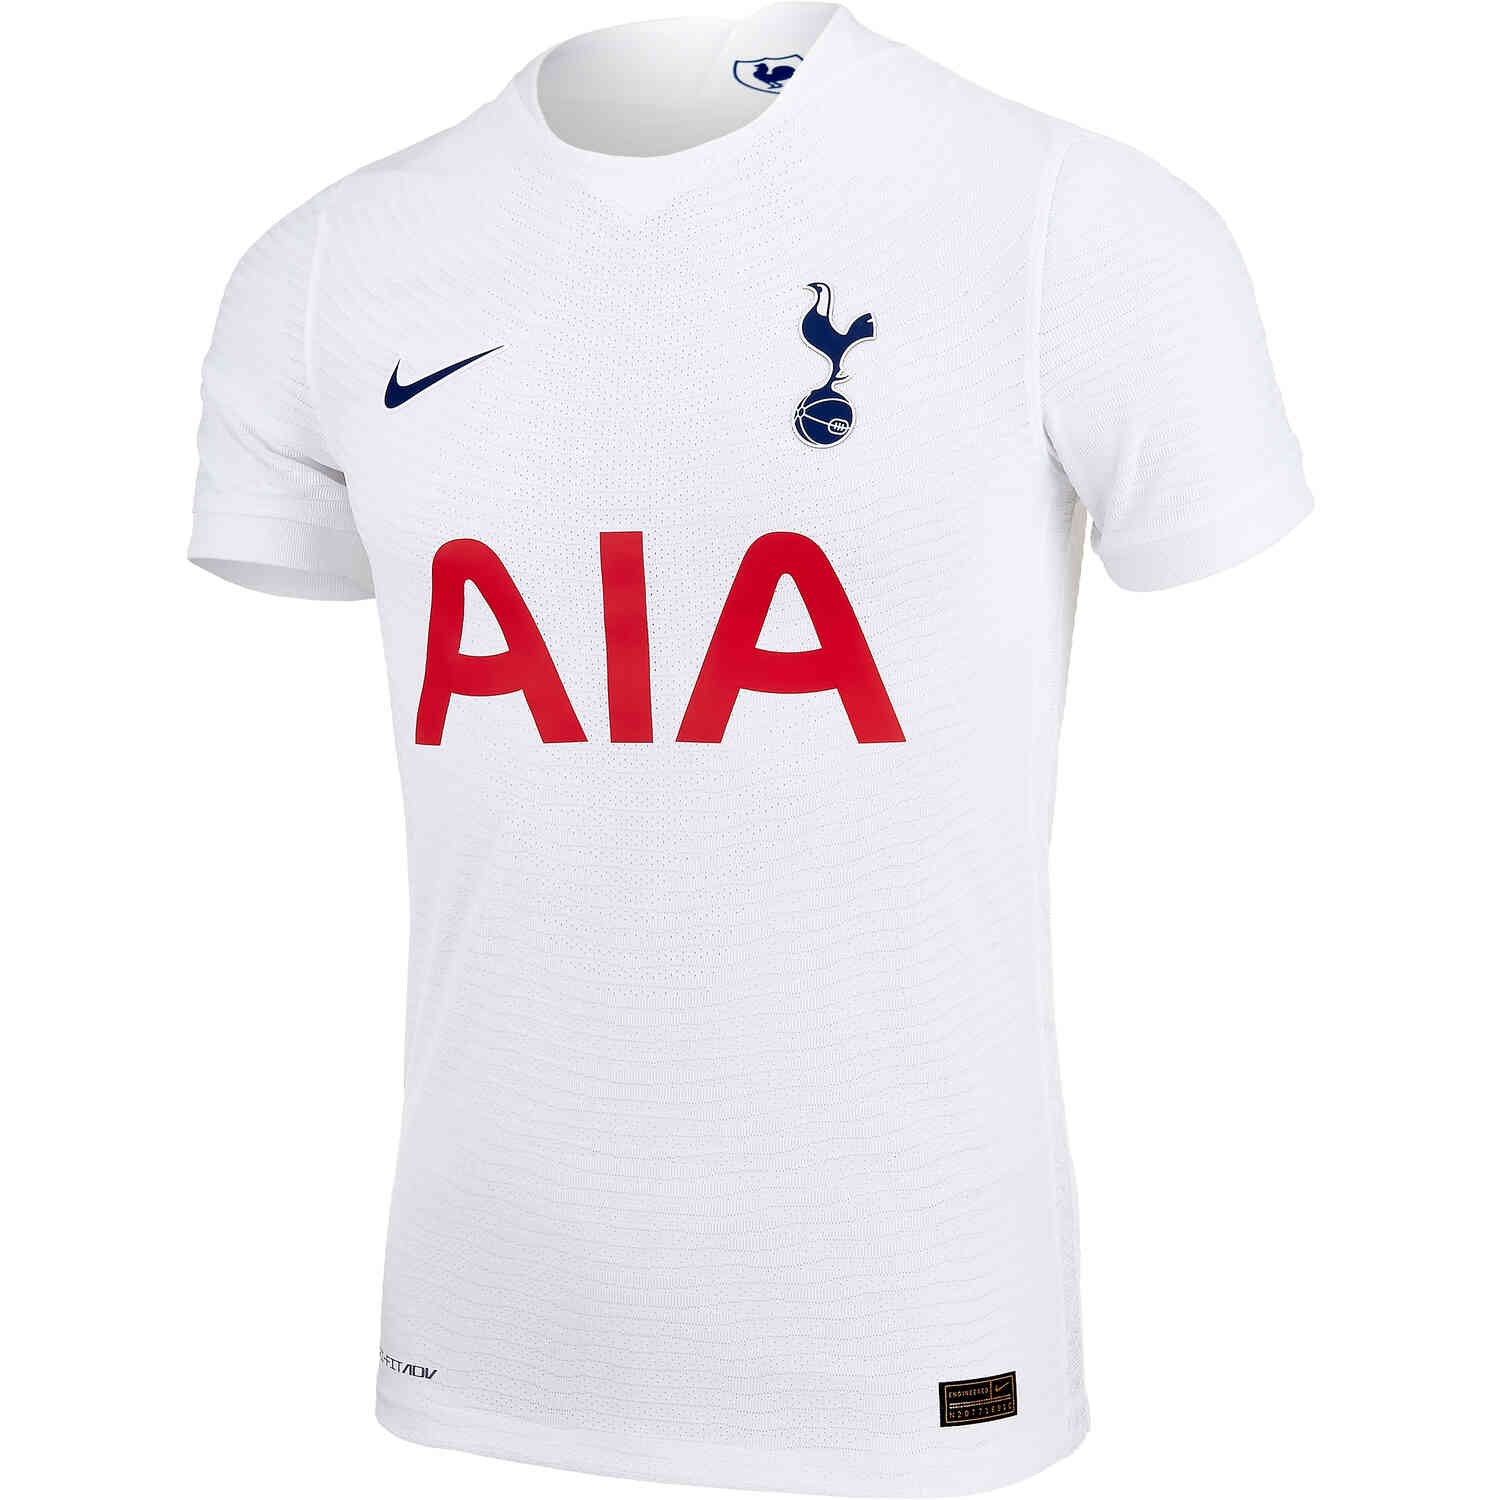 2020/21 Nike Tottenham Away Jersey - SoccerPro